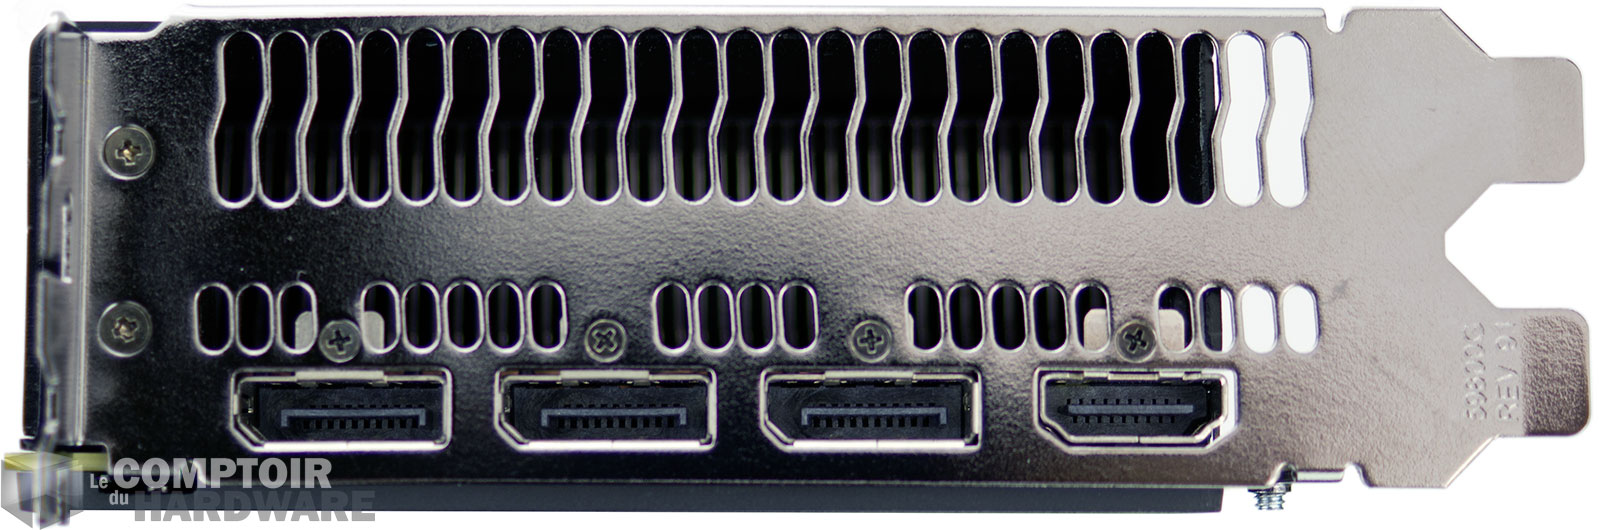 RADEON RX VEGA56 : connecteurs vidéo